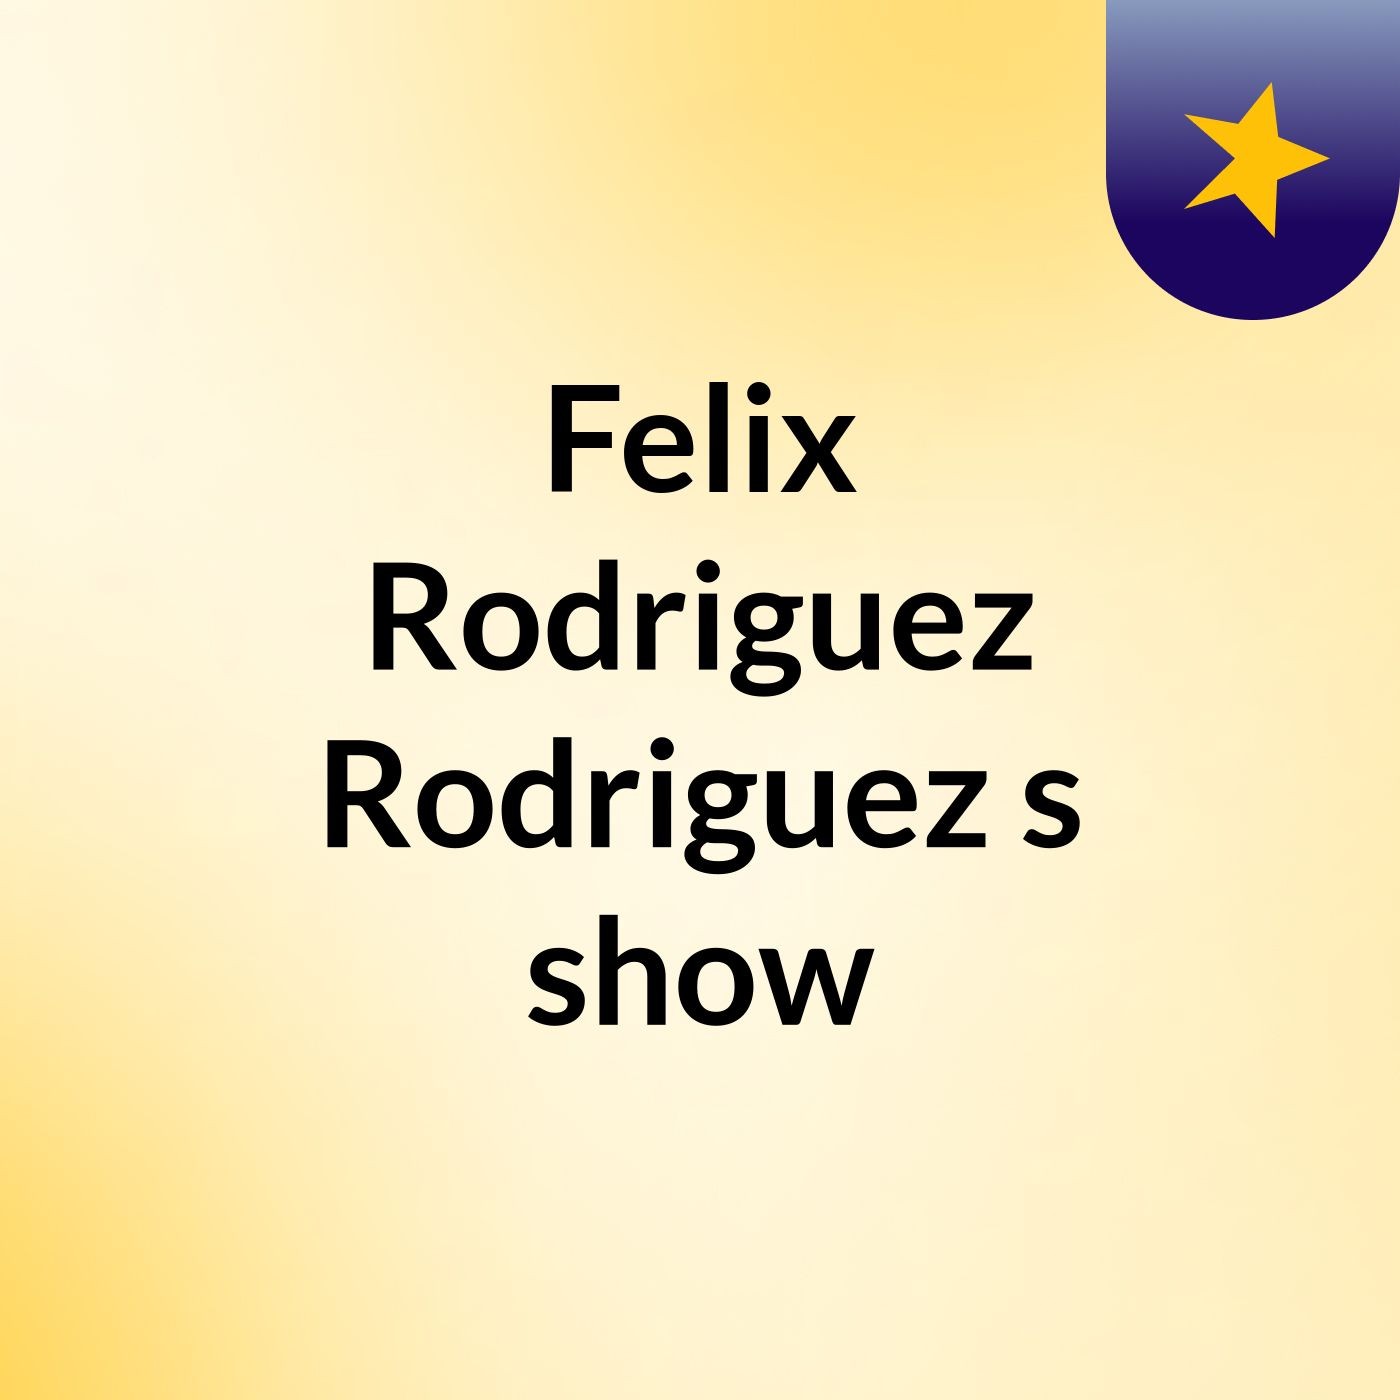 Felix Rodriguez Rodriguez's show